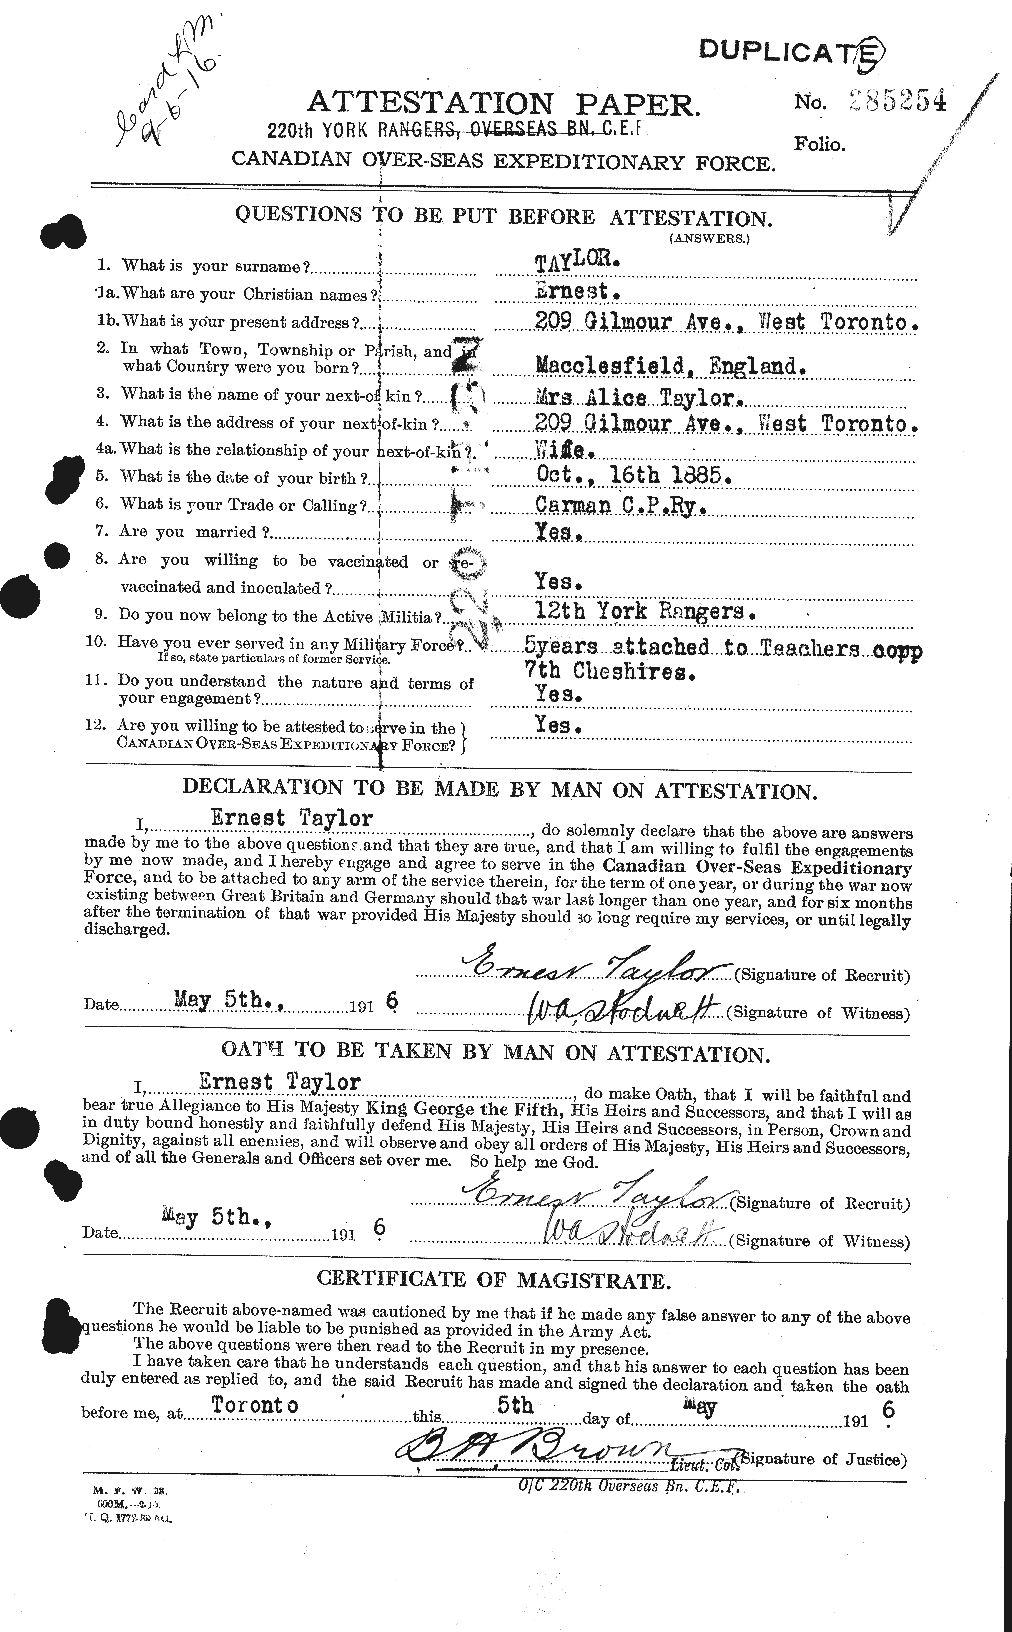 Dossiers du Personnel de la Première Guerre mondiale - CEC 627384a